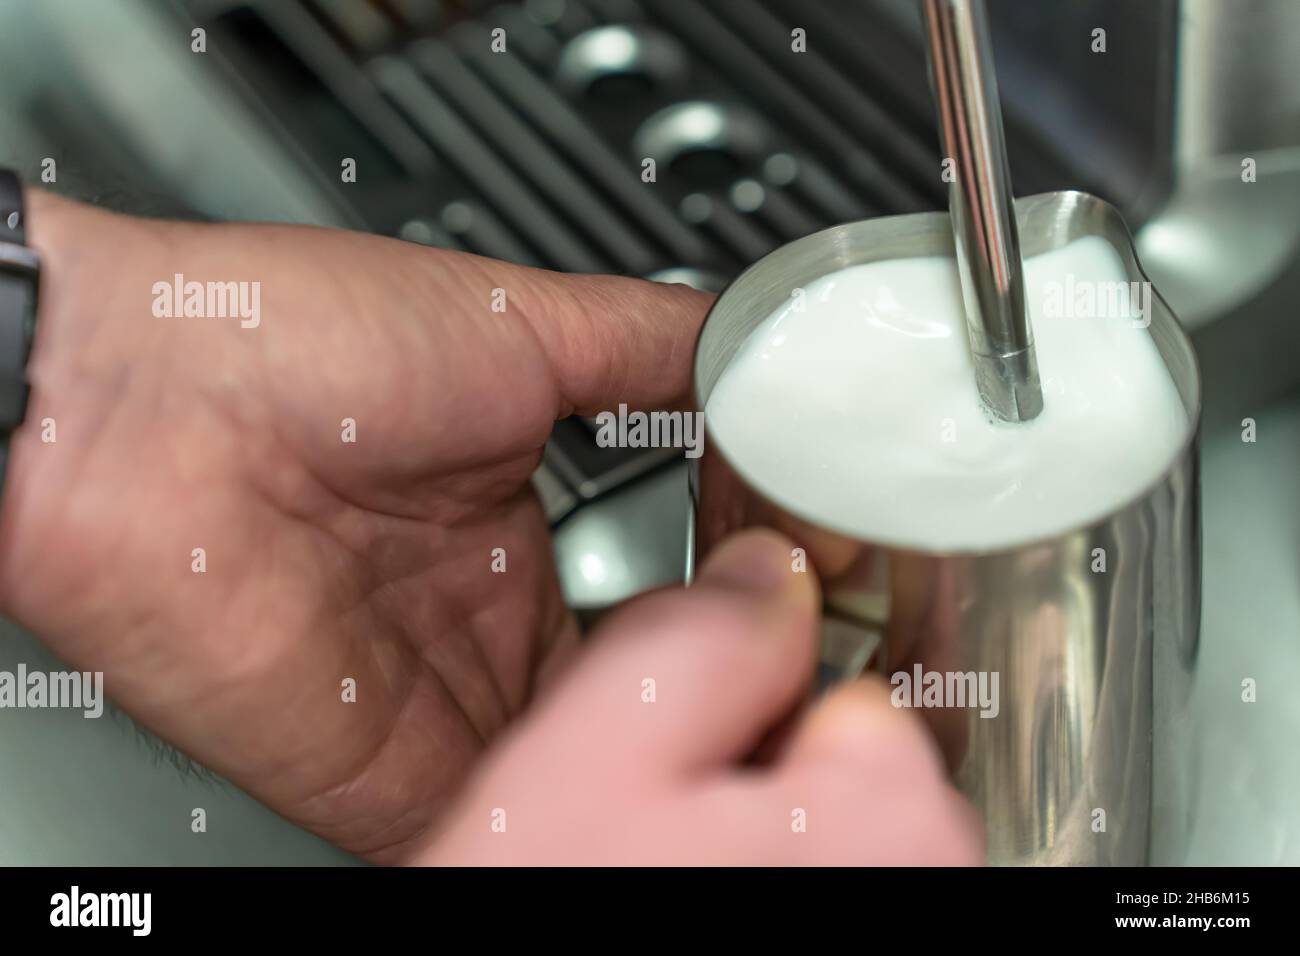 Ein Mann hackt Milch für einen Latte in einem Stahlkrug. Stockfoto